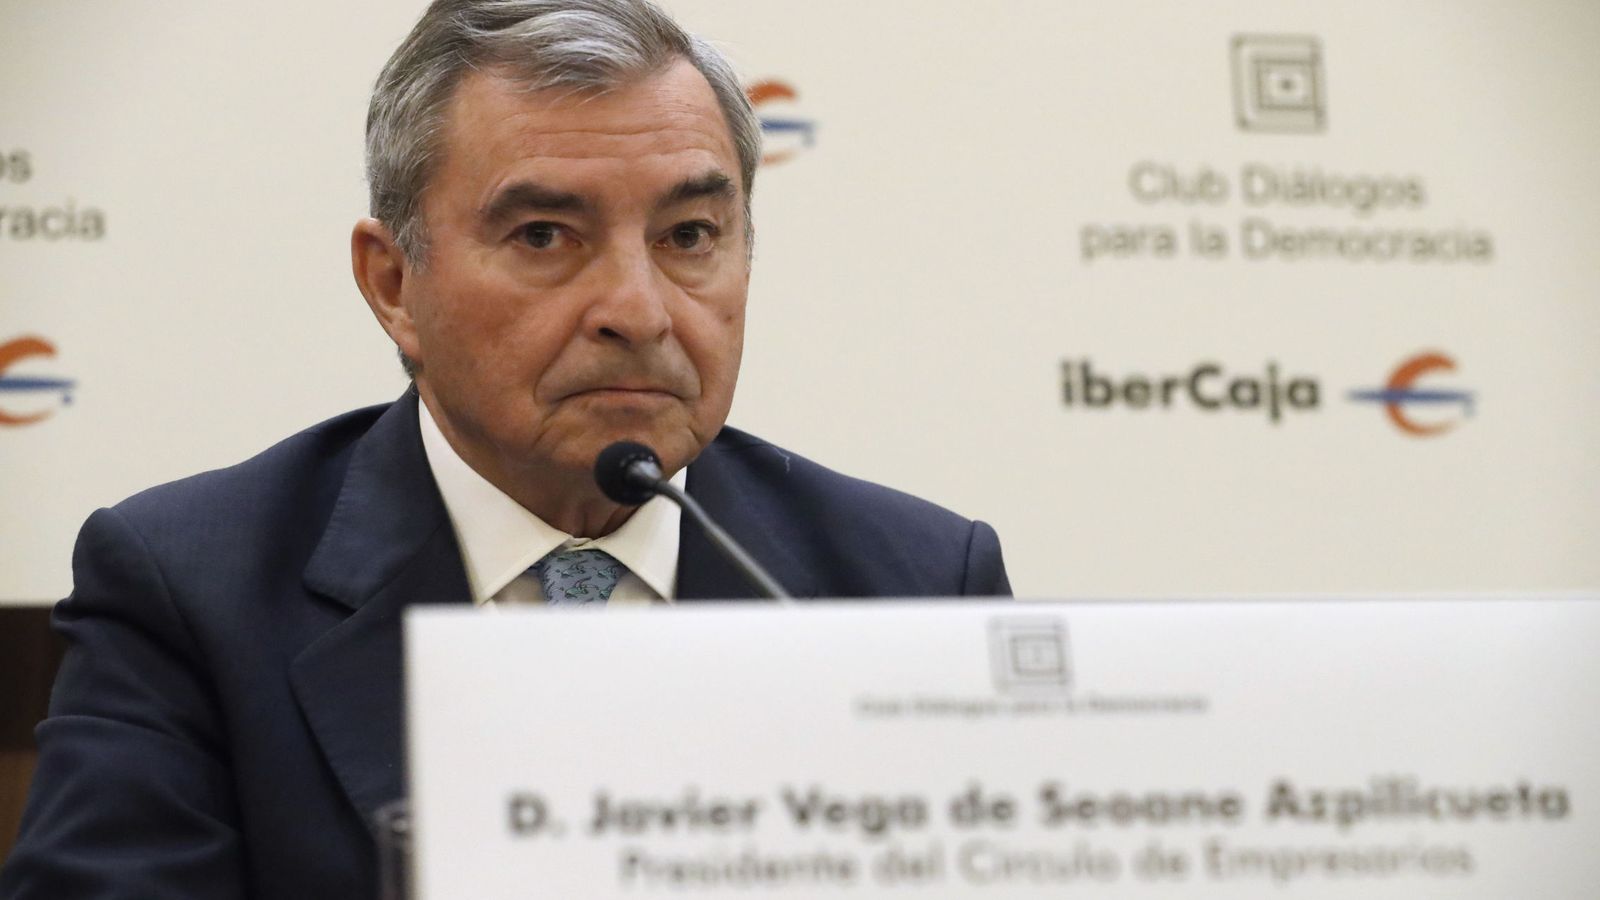 Foto: El presidente del Círculo de Empresarios, Javier Vega de Seoane. (EFE)